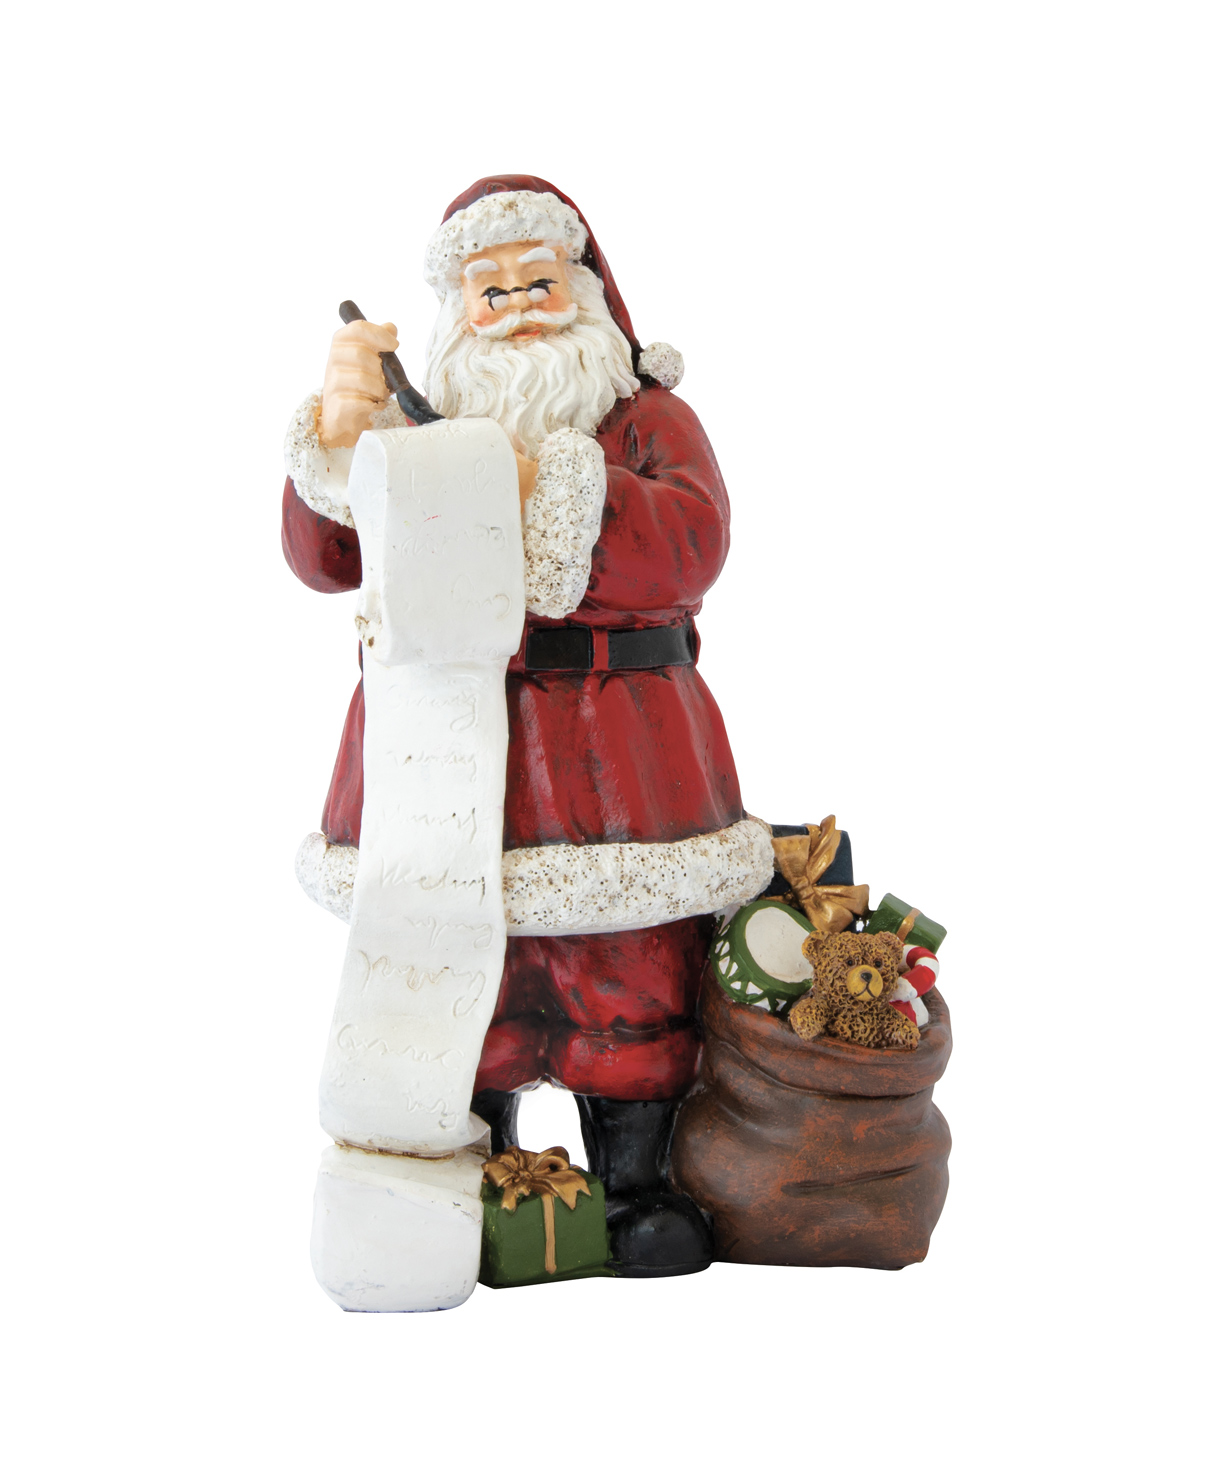 Դեկորատիվ արձանիկ ''Christmas Figurines'' Ձմեռ Պապիկը՝ նվերներով